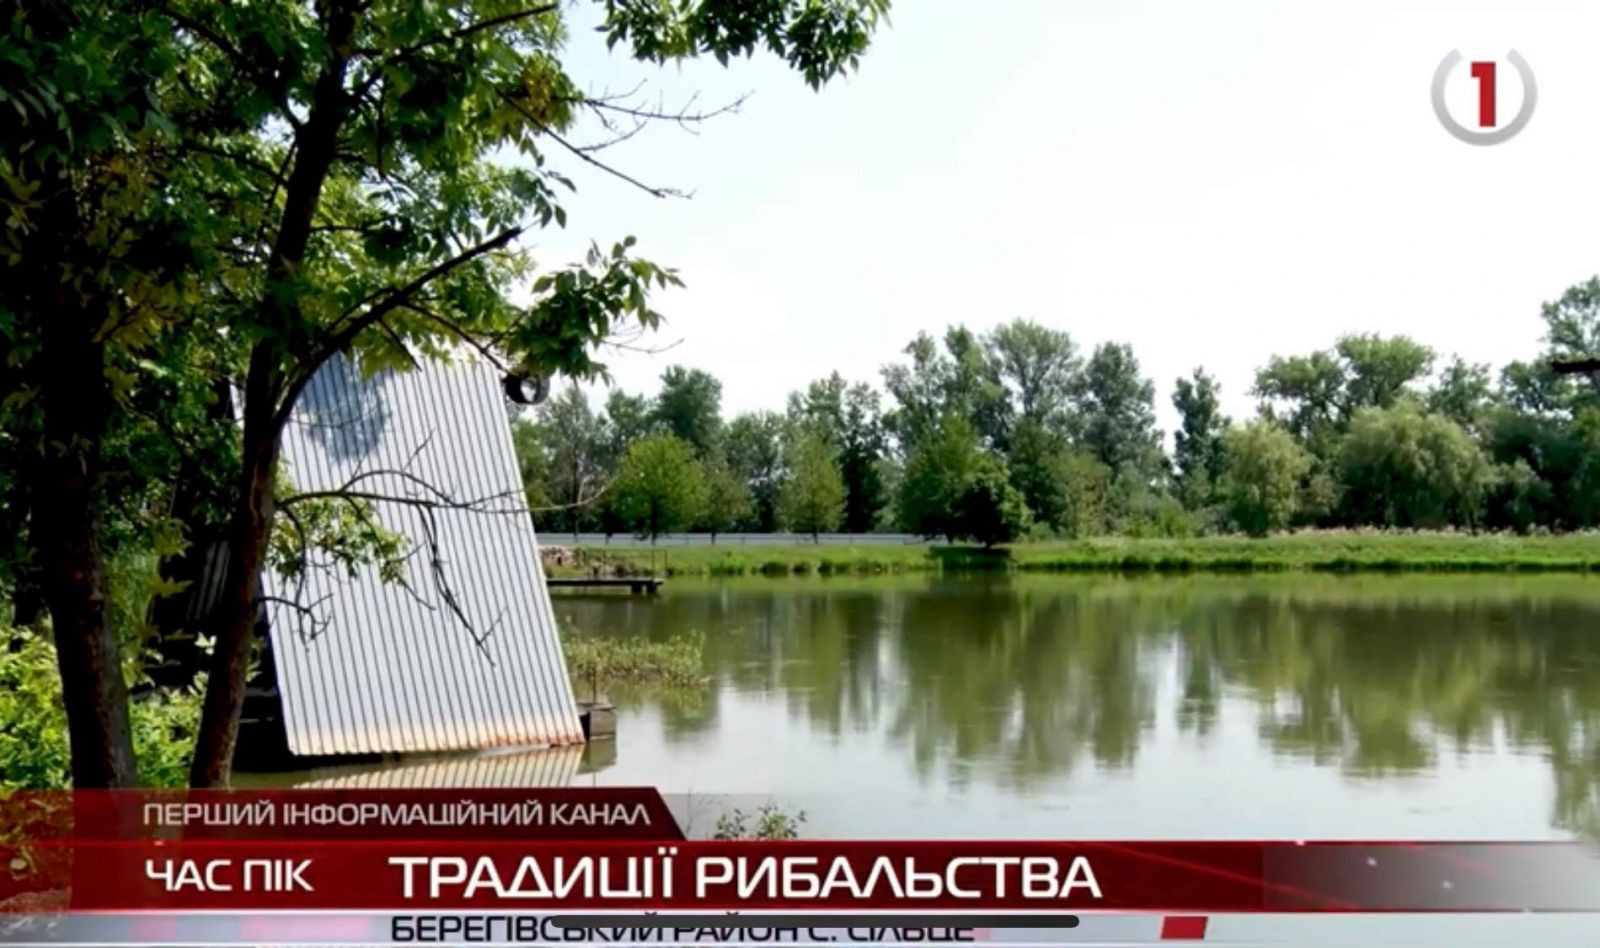 Традиційне та спортивне: ставок неподалік Іршави приваблює любителів рибальства (ВІДЕО)